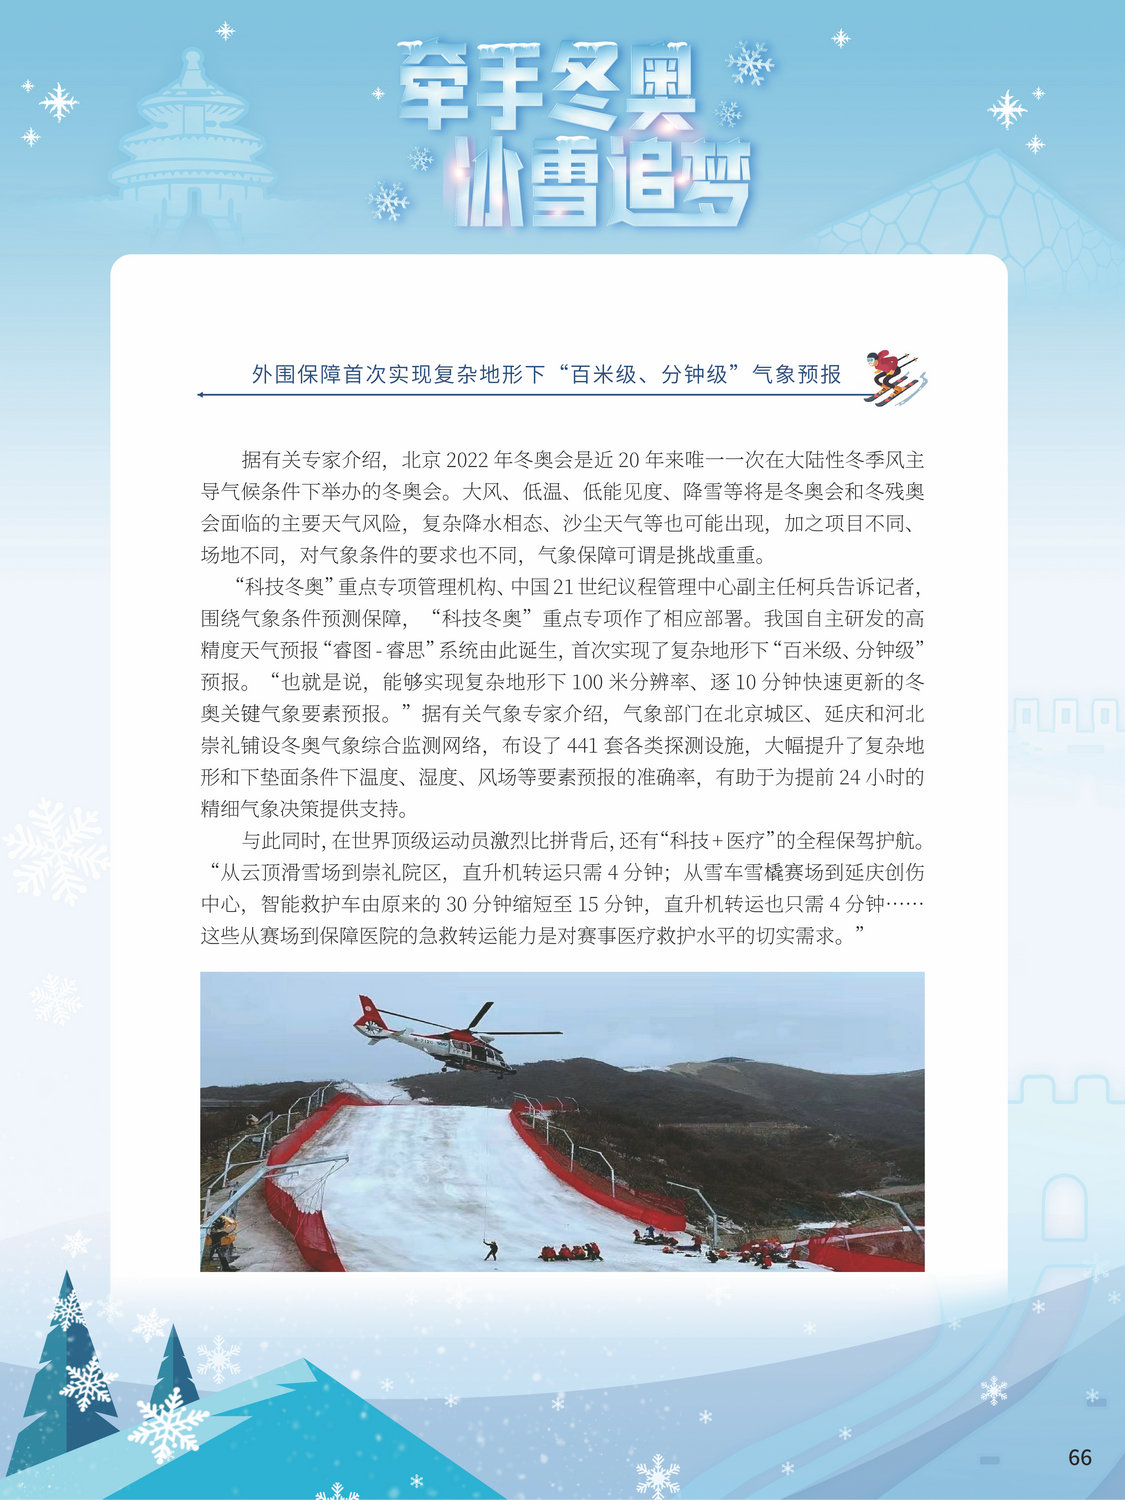 2022北京冬奥巡礼_图66